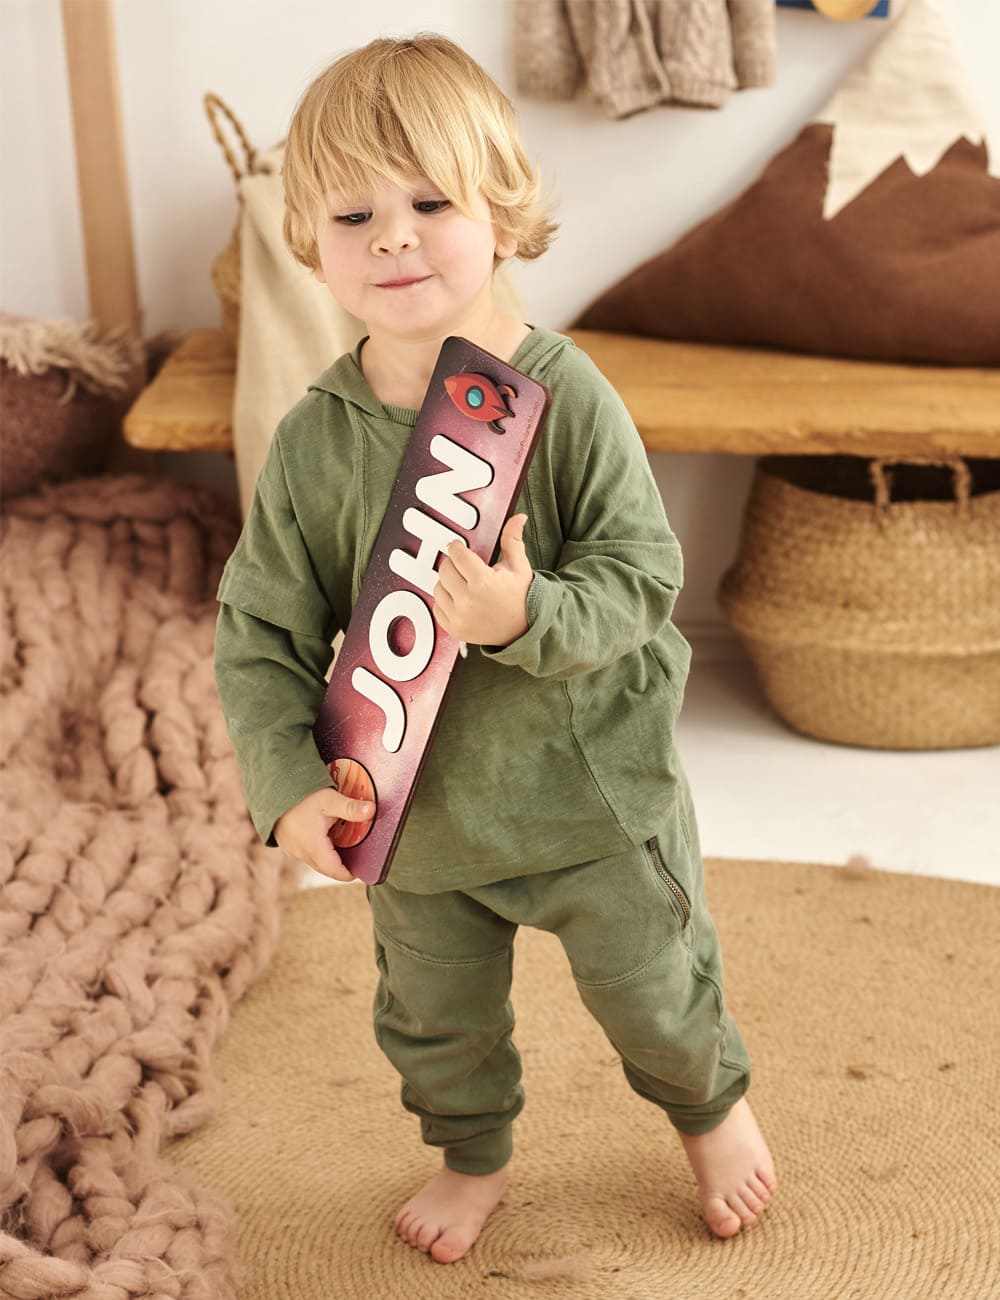 Дитячий дерев'яний іменний пазл - сортер для хлопчика з галактикою - Gisolo